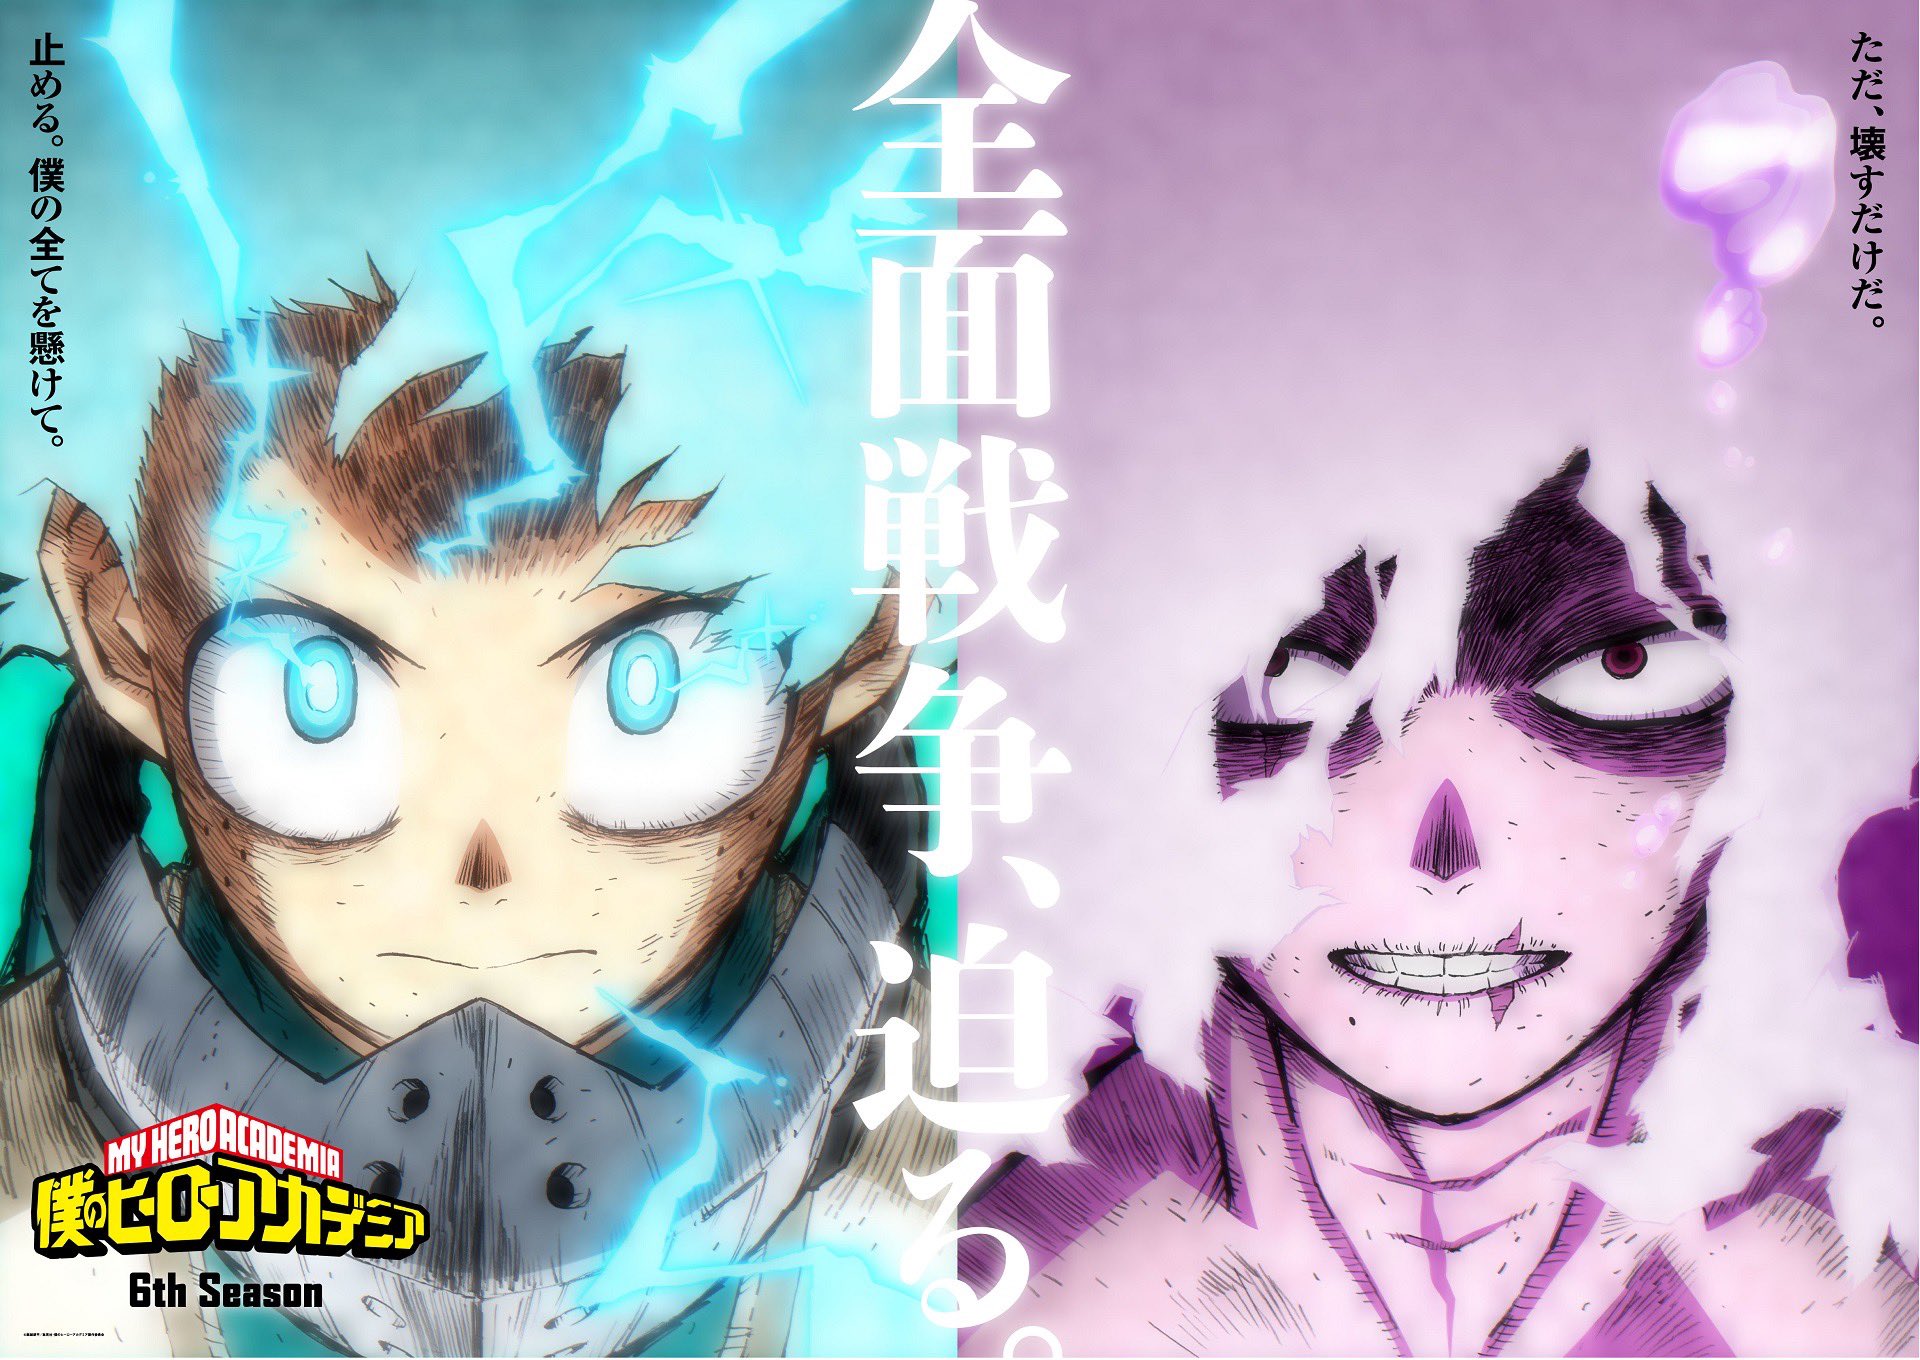 Primeiras Impressões - Boku no Hero Academia 6 temporada - Anime United